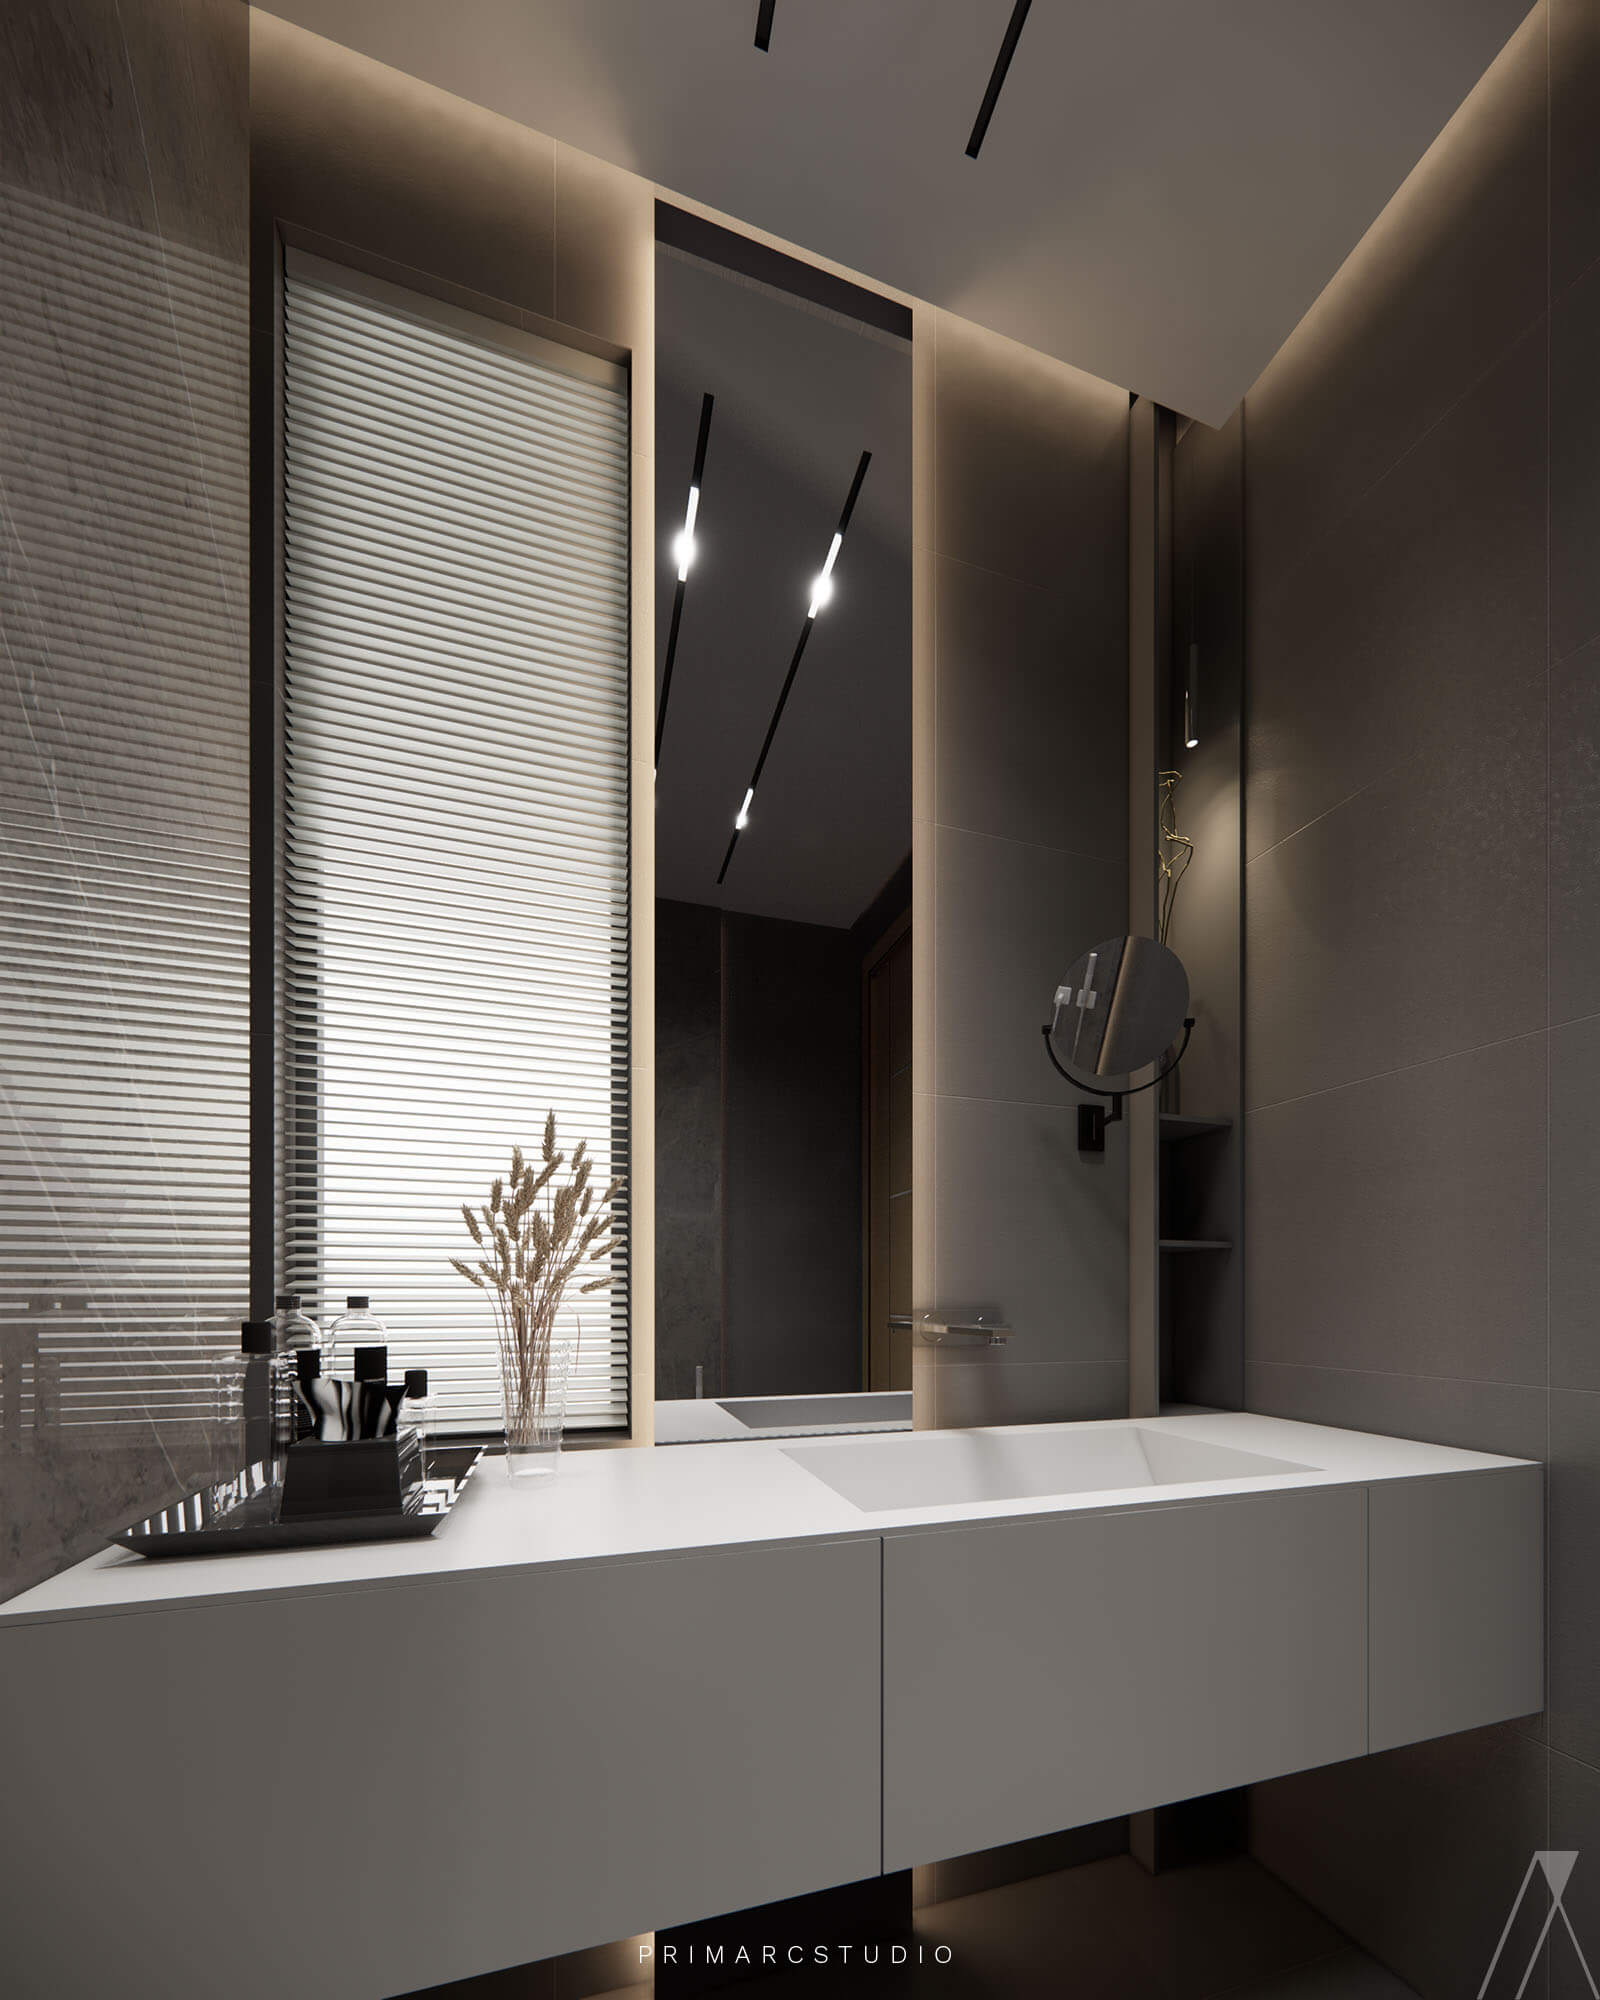 Washroom interior design in grey color